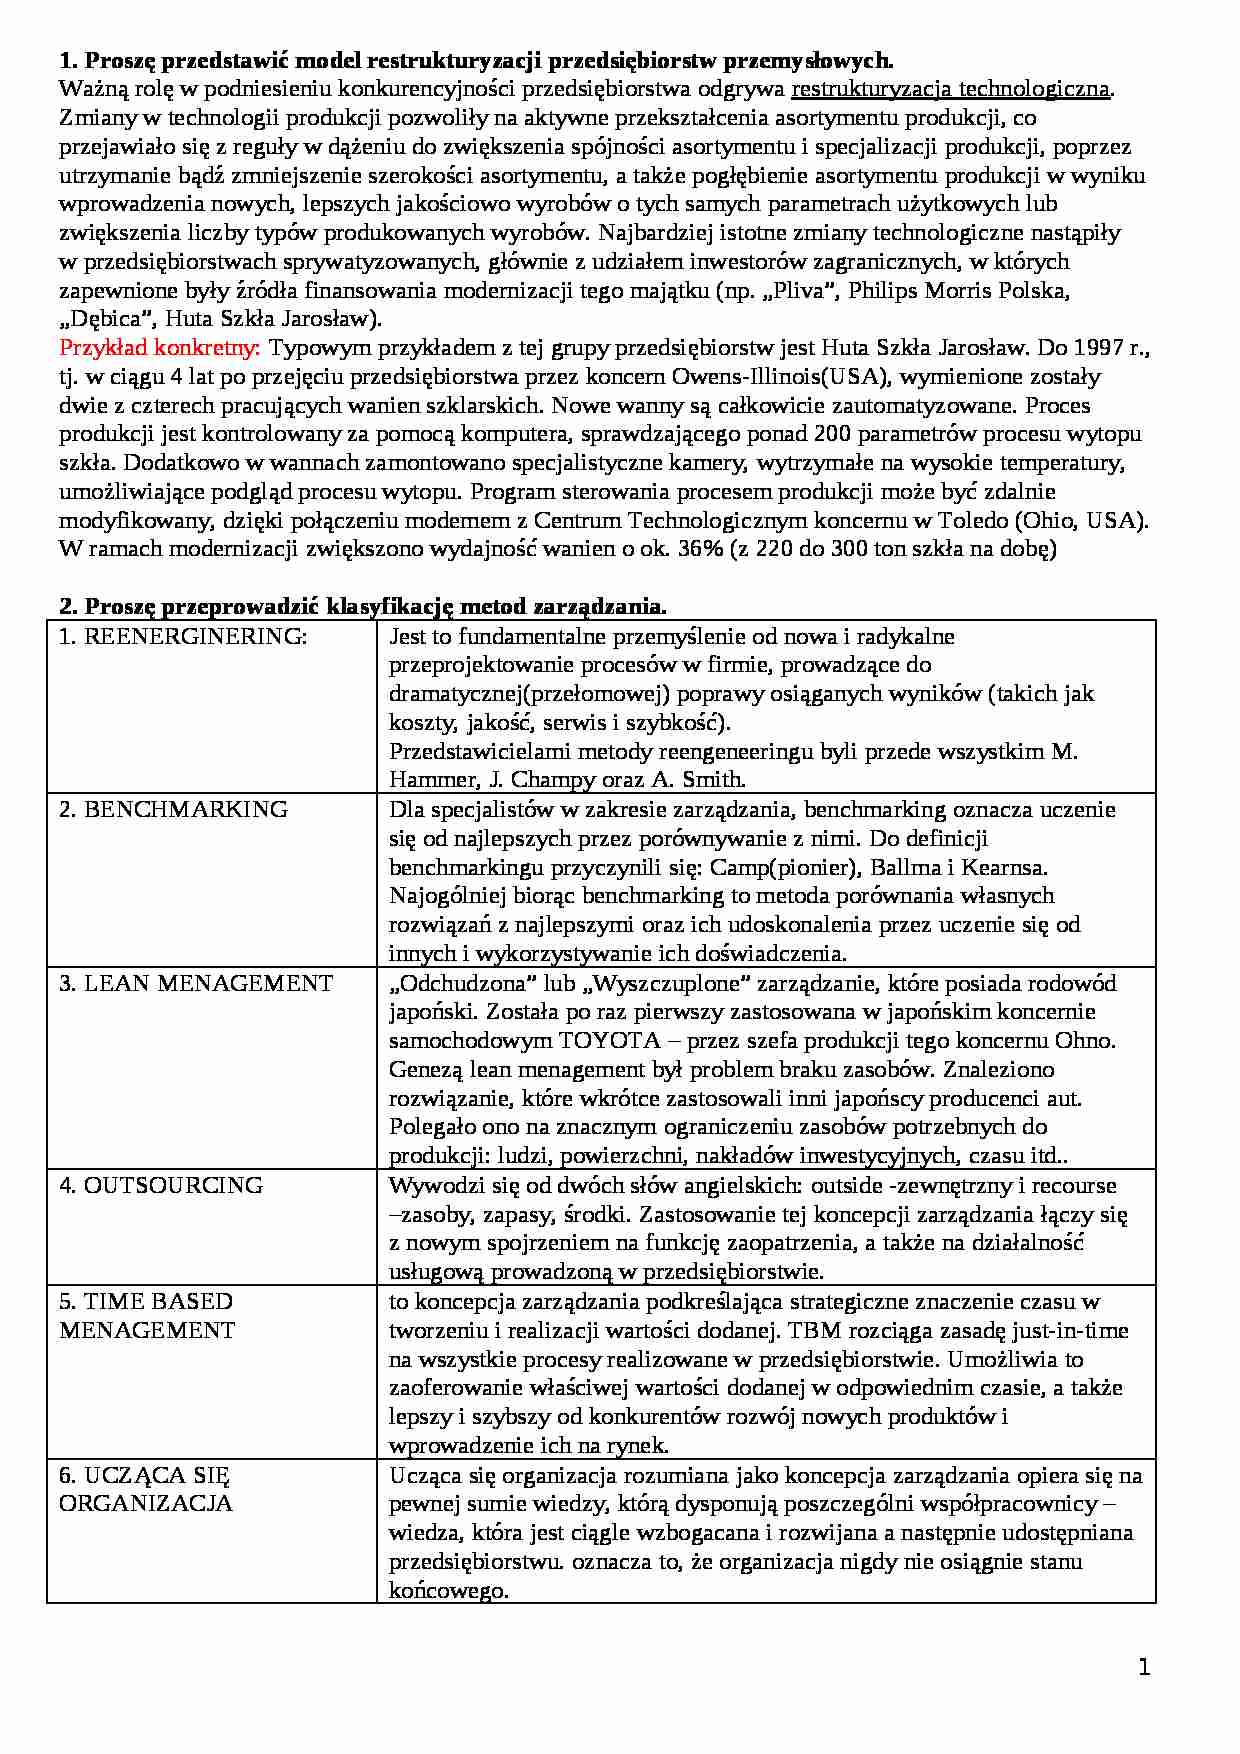 Metody zarządzania - strona 1